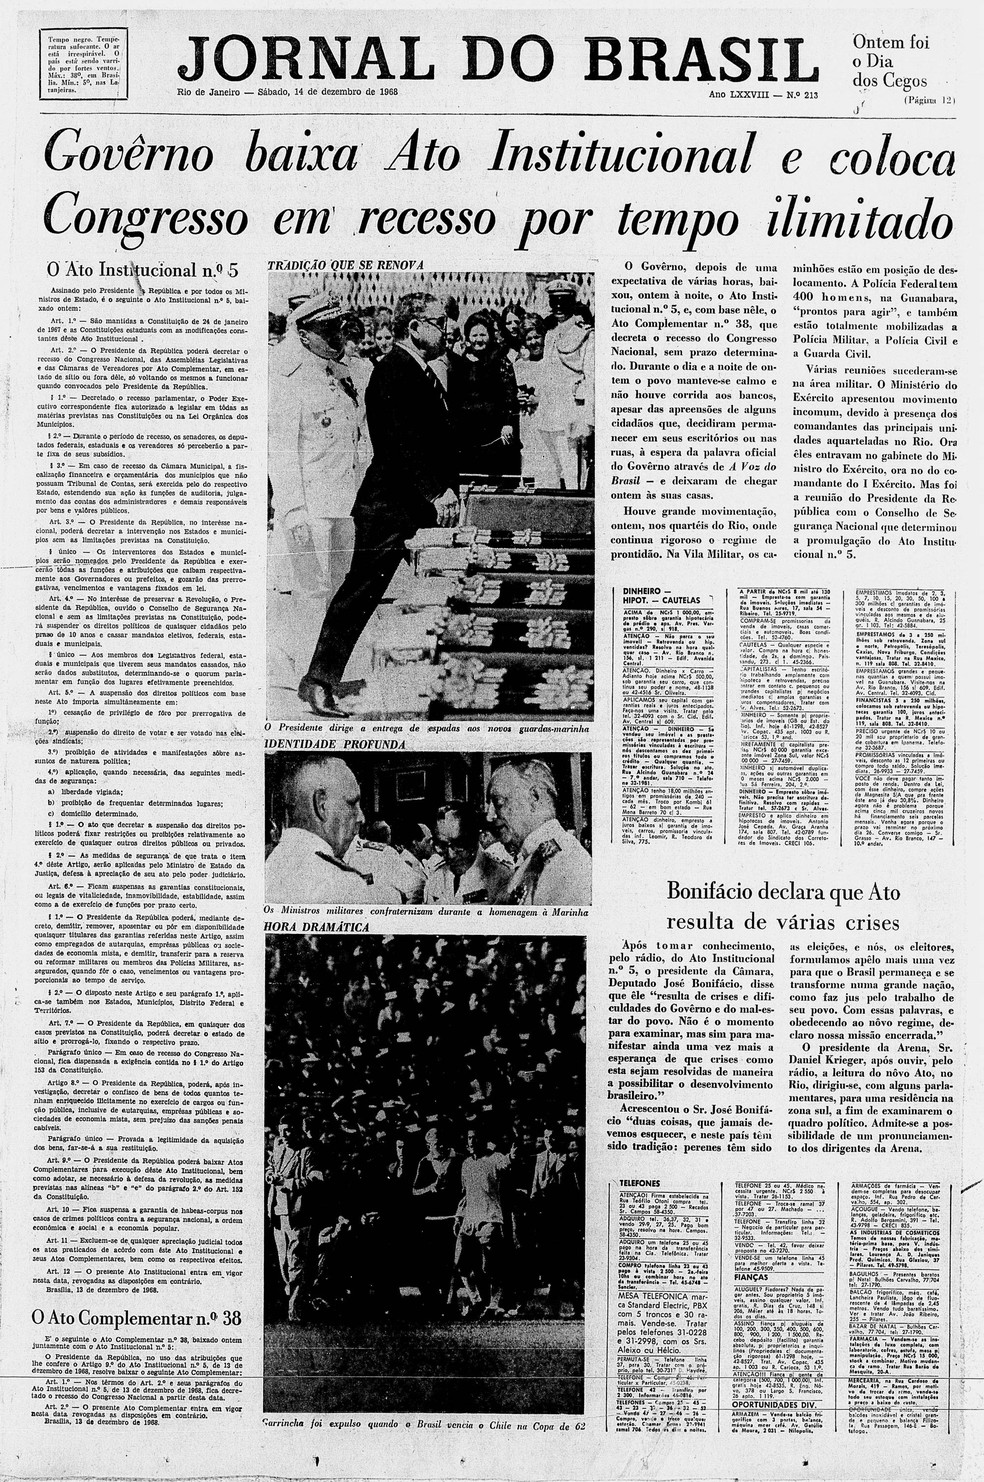 Capa do 'Jornal do Brasil' de 14 de dezembro de 1968 manchetou o momento em que o governo baixou o AI5 (Foto: Jornal do Brasil/CPDoc JB)